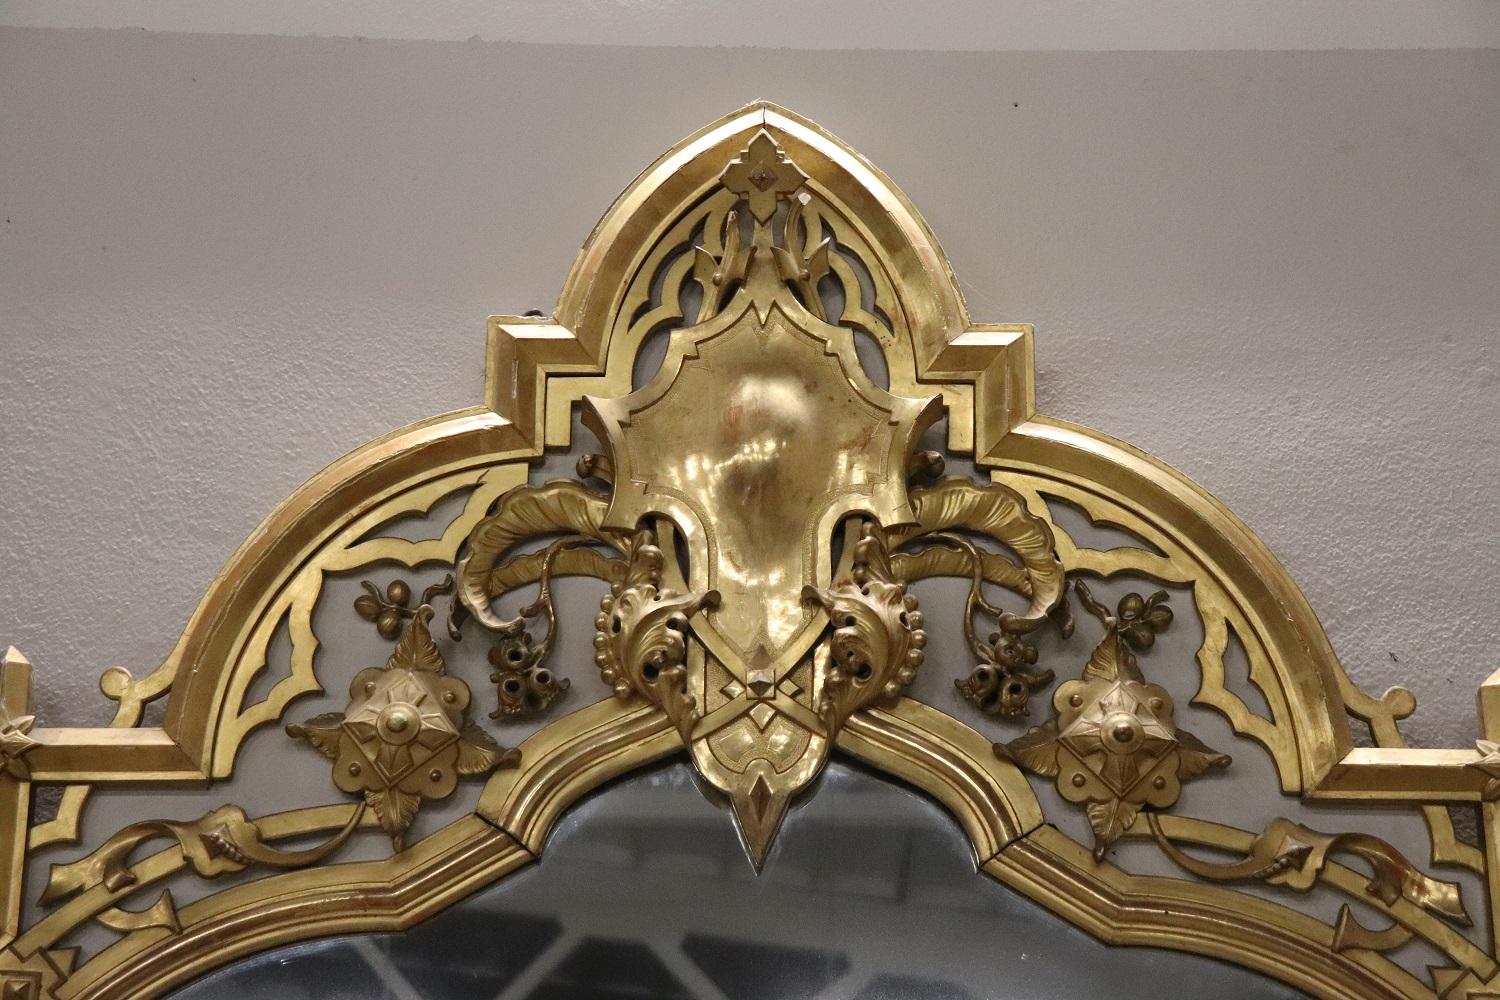 Spectaculaire grand miroir italien ancien en bois du 19ème siècle finement décoré de sculptures. Laqué et orné de décorations dorées à la feuille d'or. Très impressionnant, il est également parfait pour orner un magasin de vêtements. Mesure :